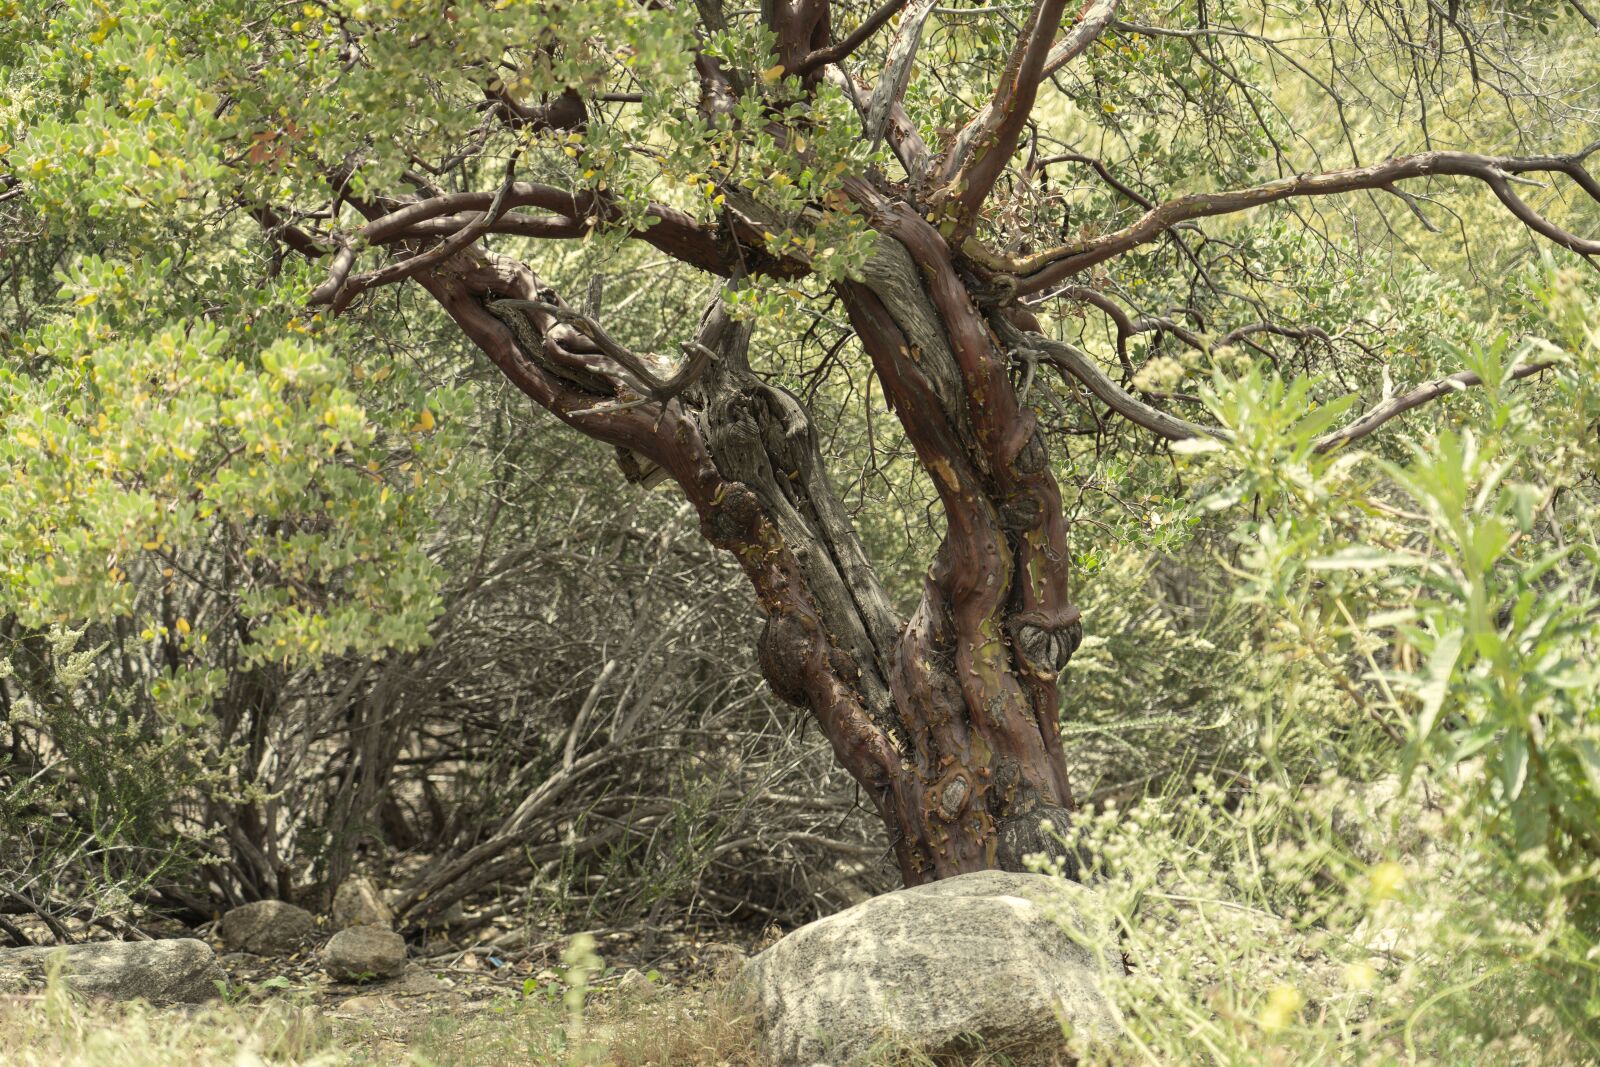 Sony a9 sample photo. Tree, foliage, scenery photography